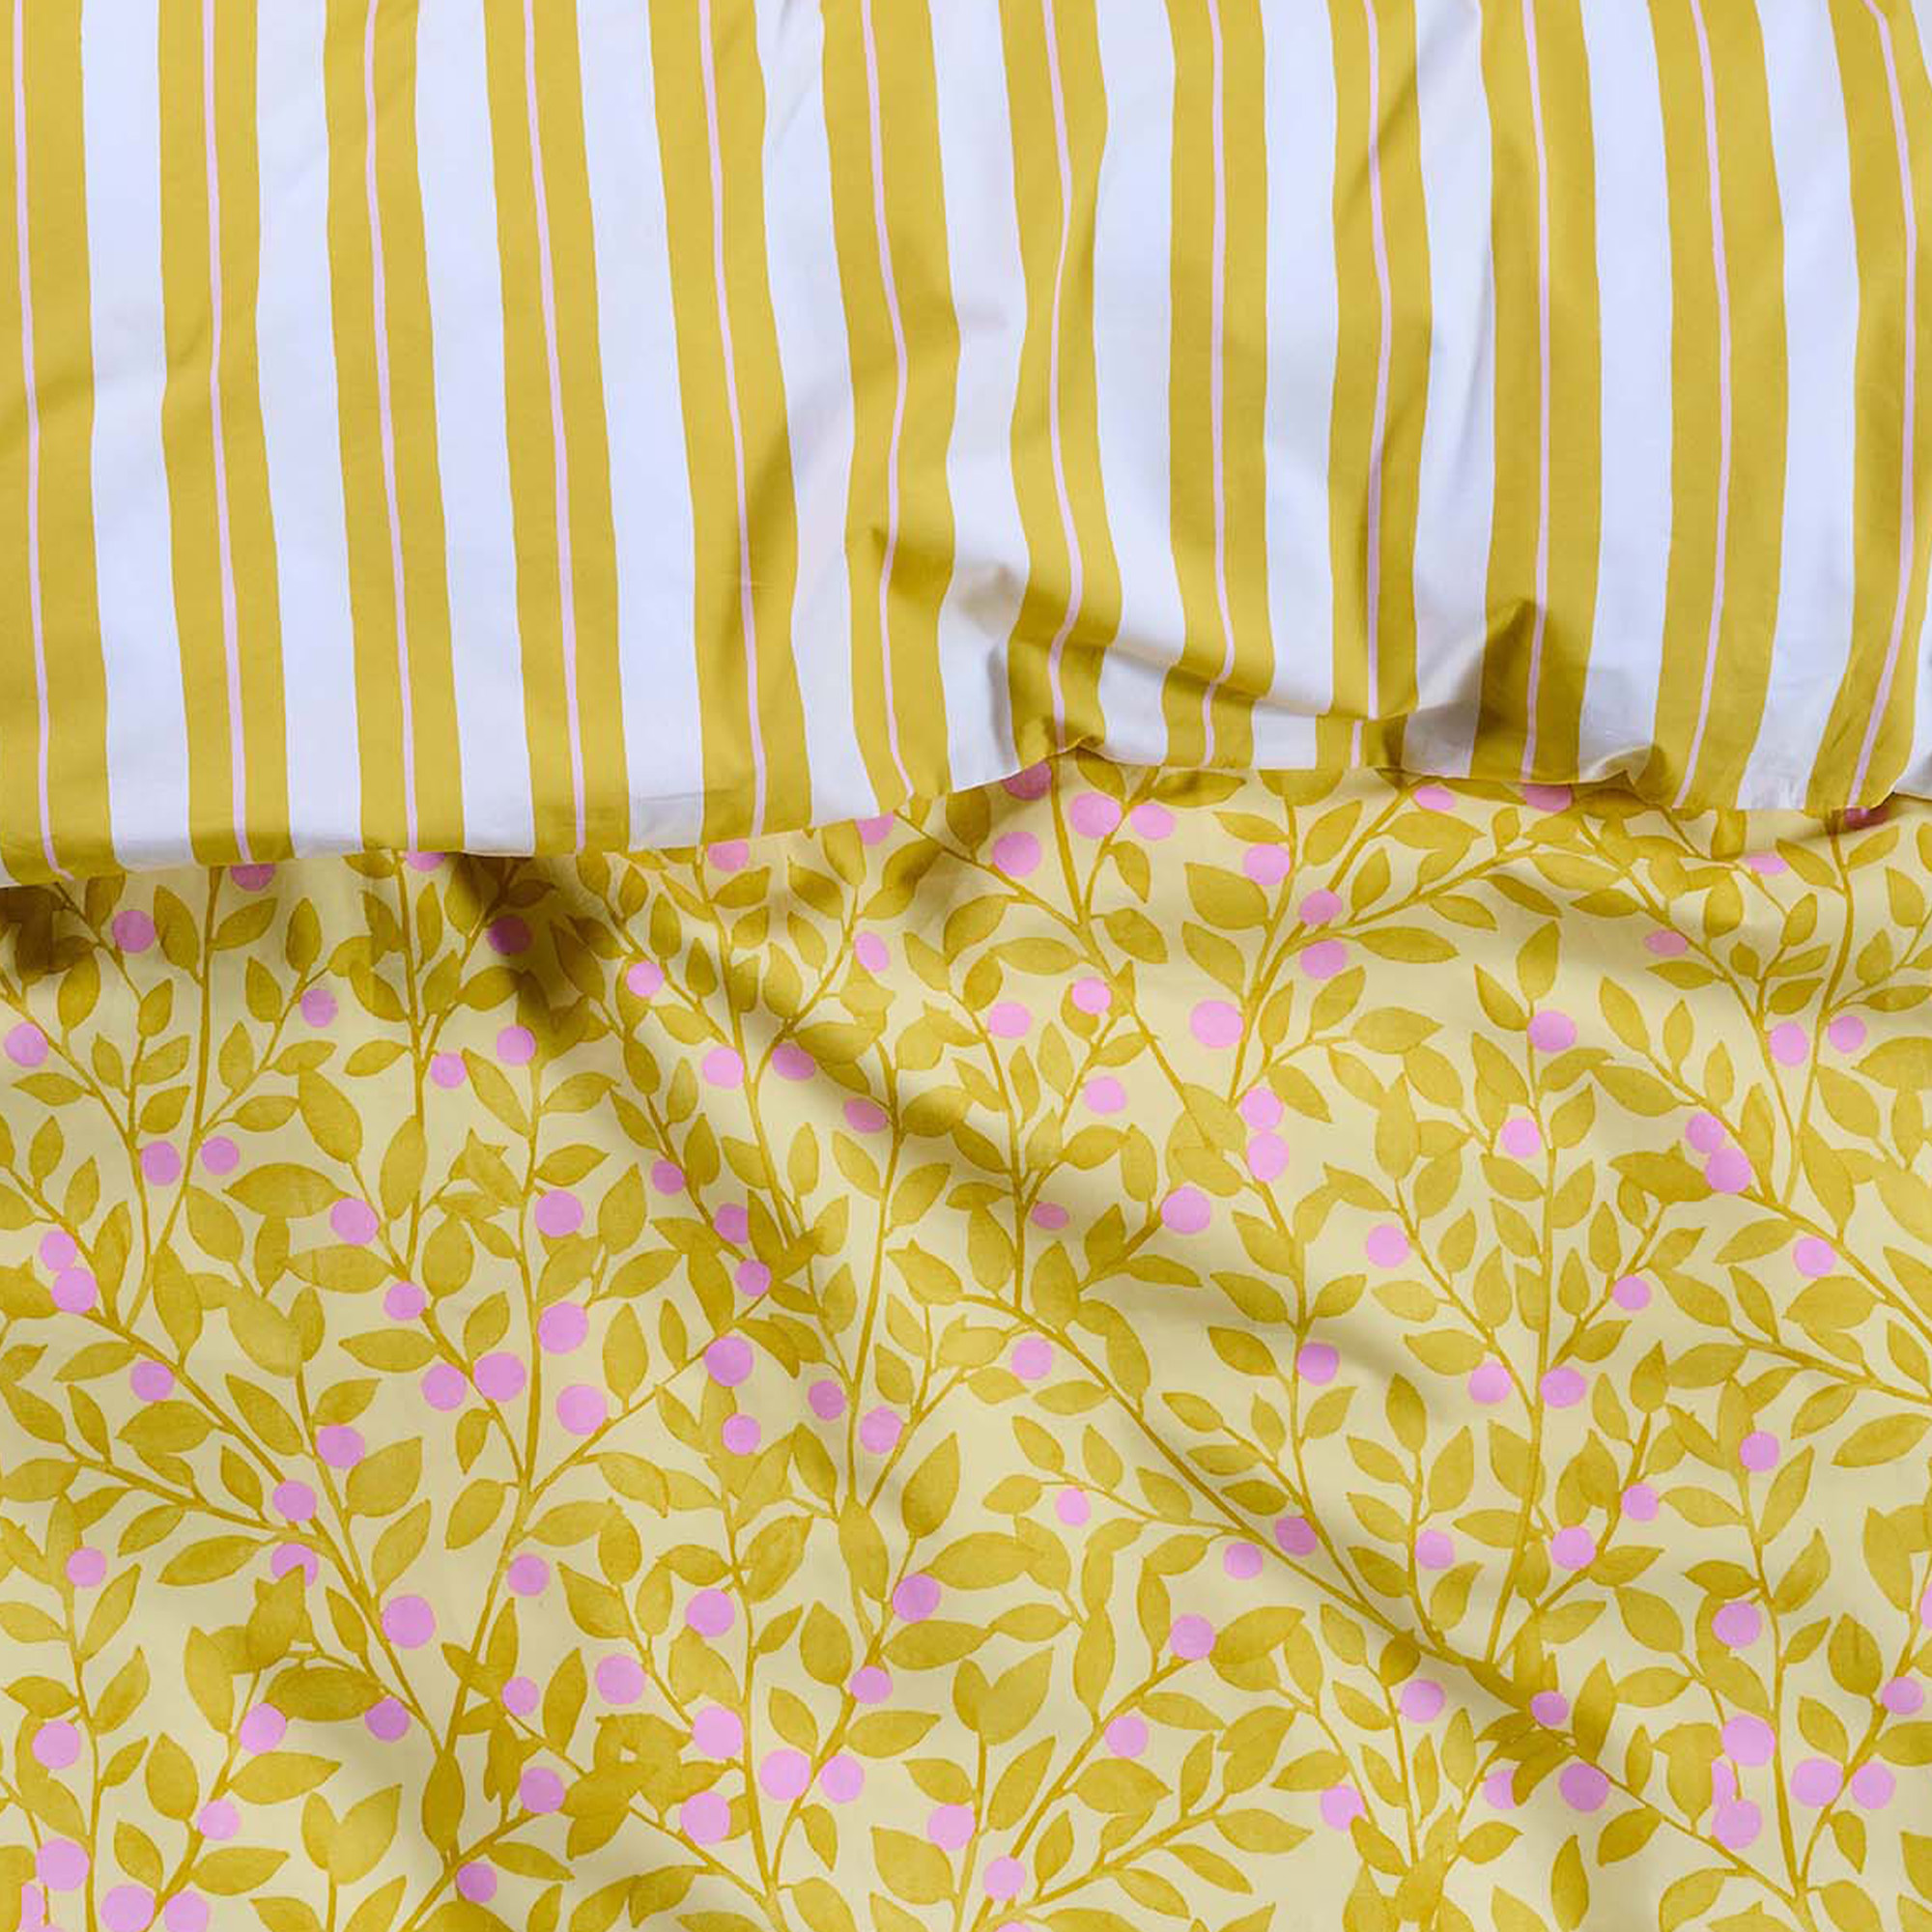 ESSENZA & CO Petite Berry Lemon Yellow Duvet Cover 155 x 220cm